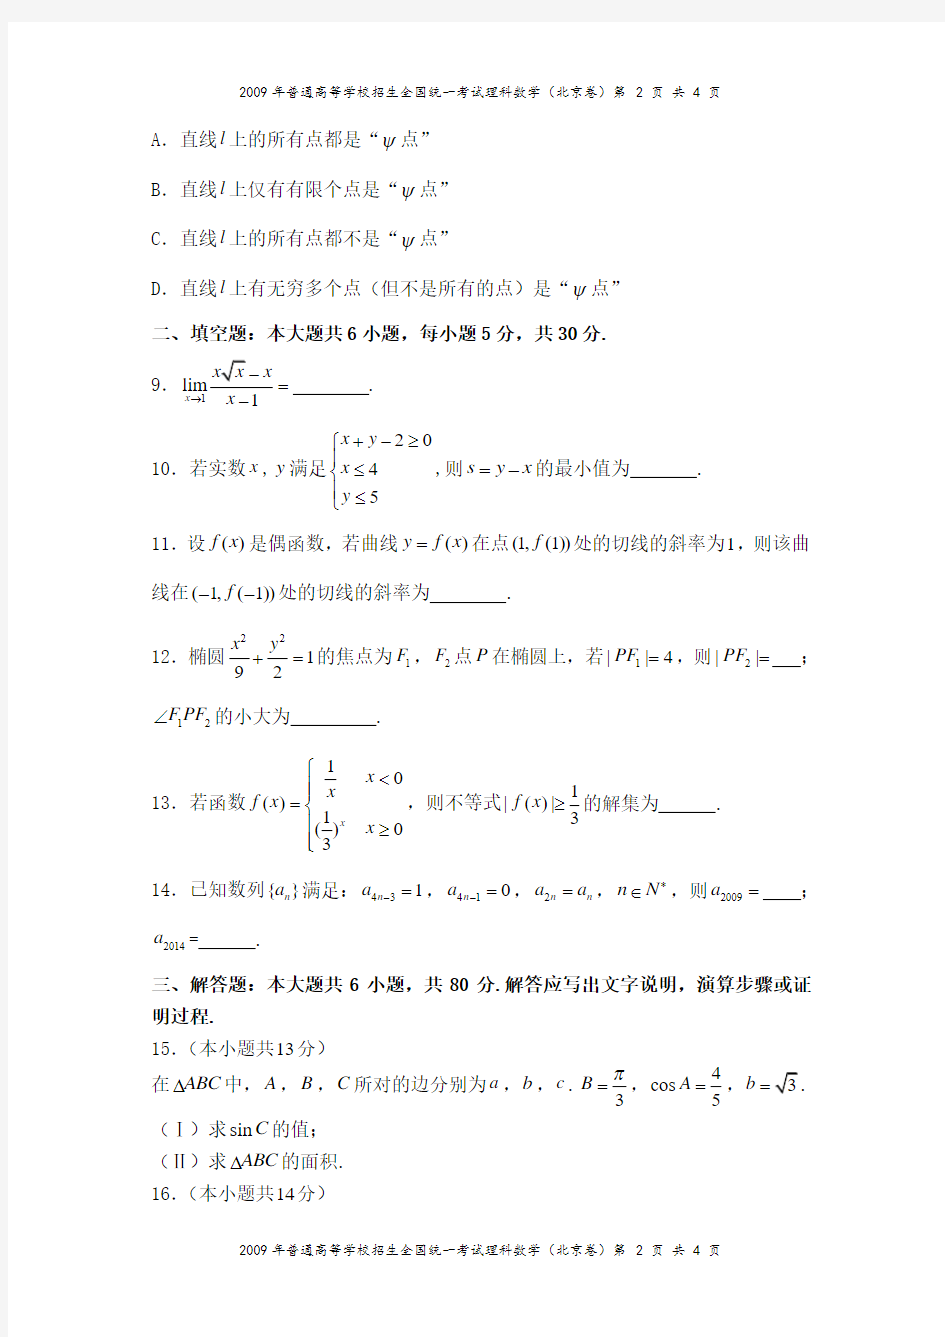 2009年高考北京卷(理科数学)